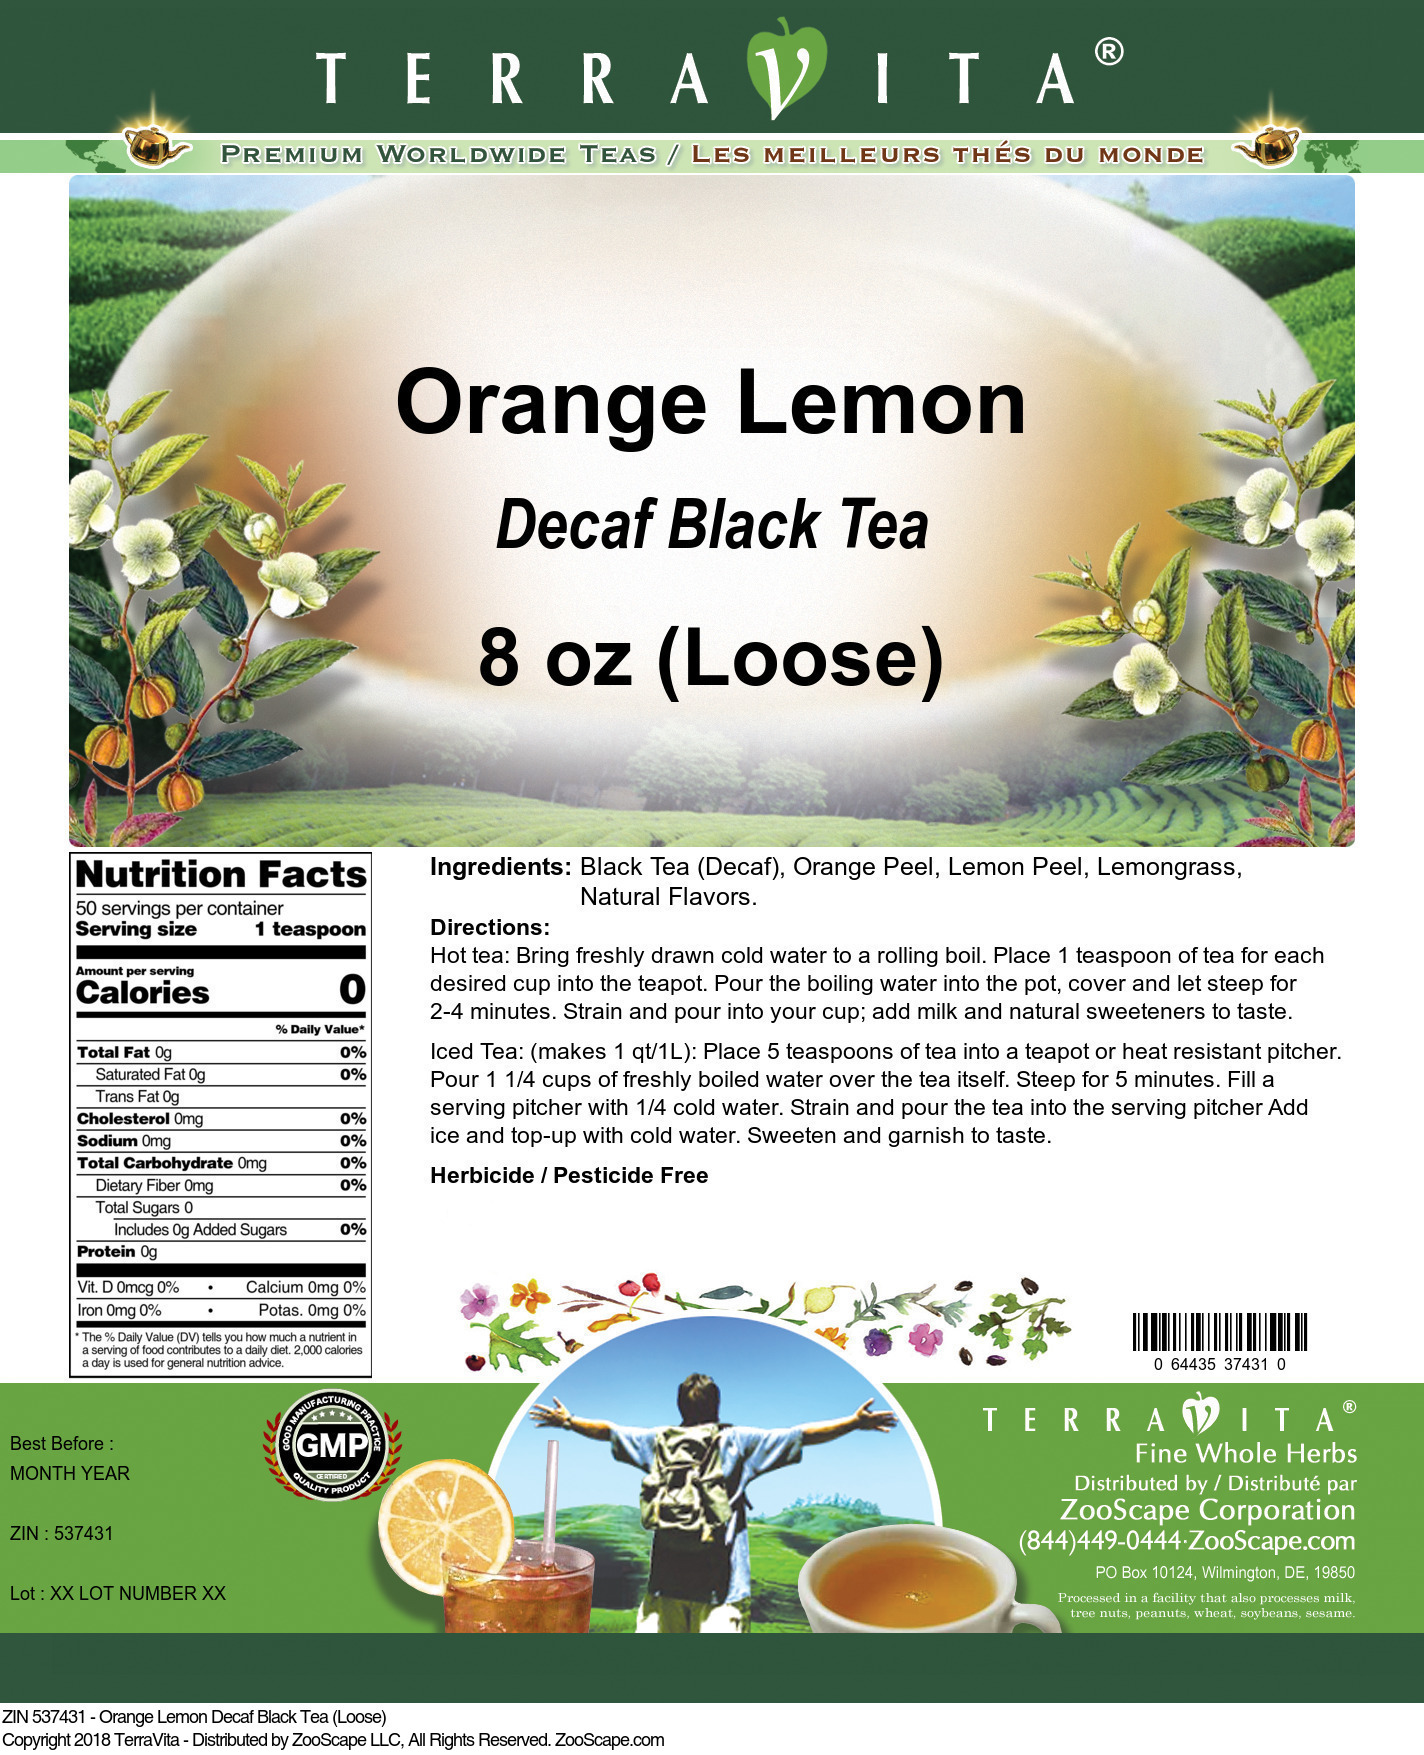 Orange Lemon Decaf Black Tea (Loose) - Label